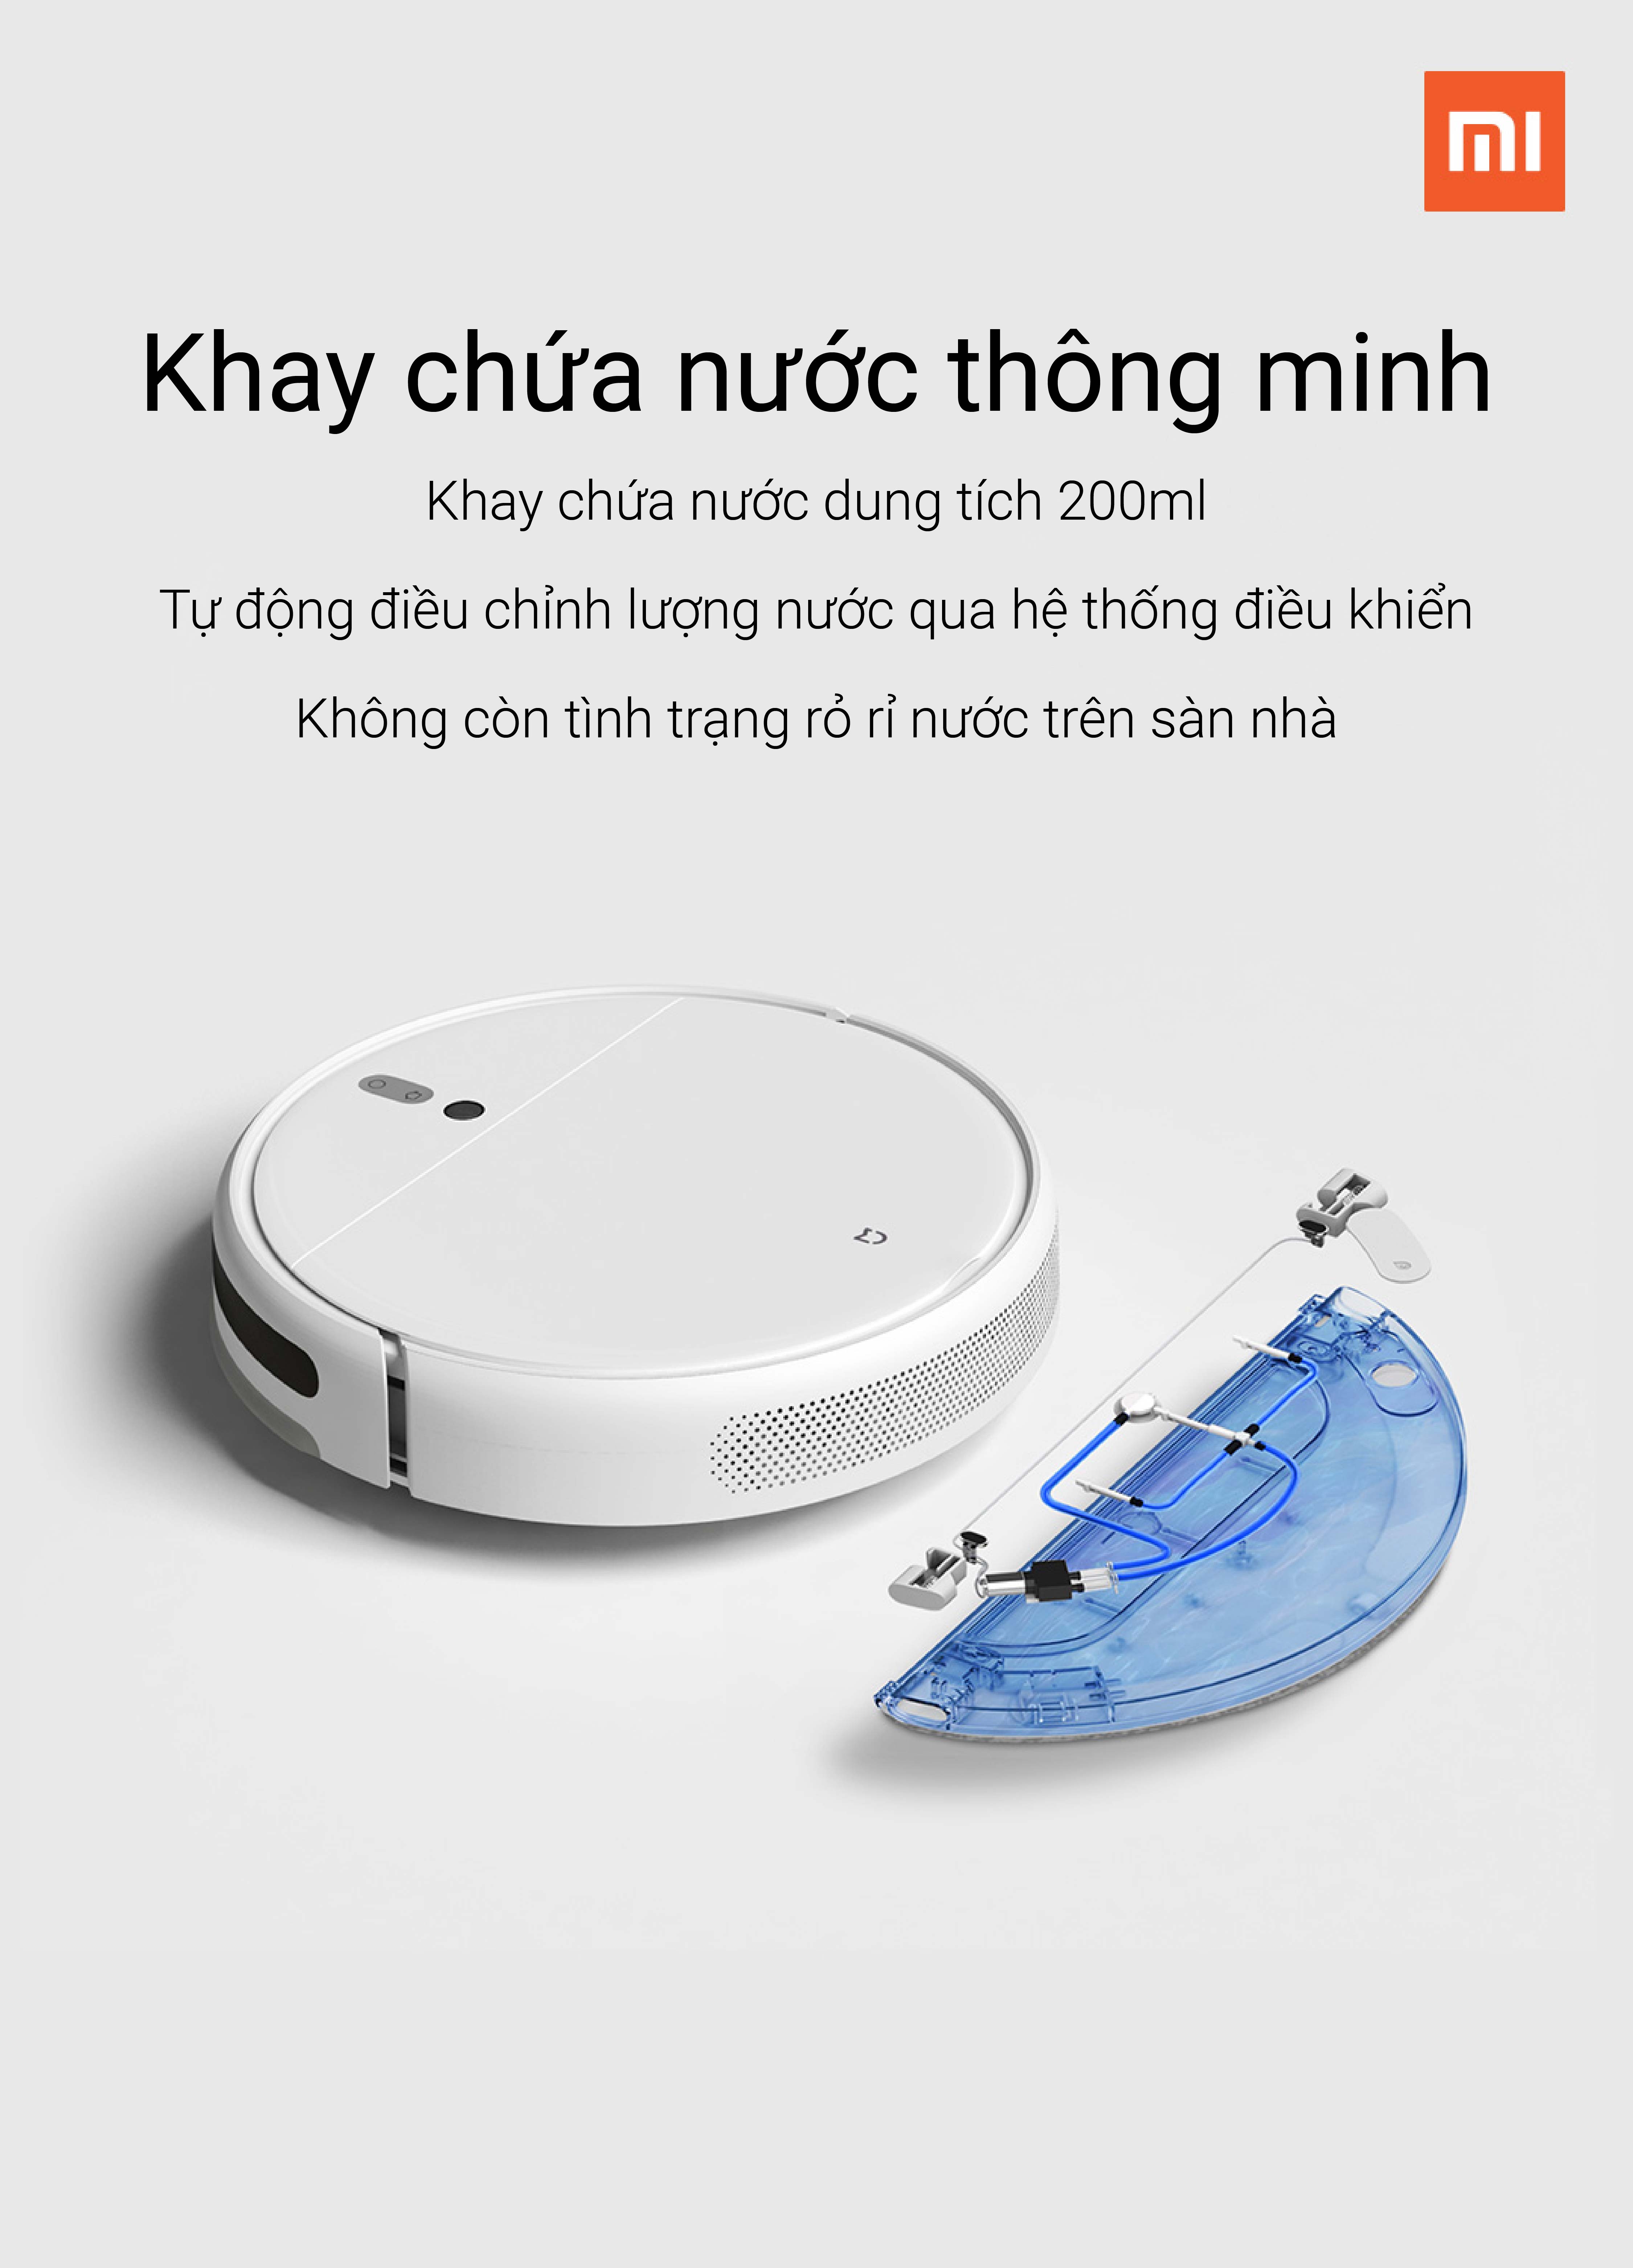 Robot Hút Bụi, Lau Nhà Thông Minh Xiaomi SKV4093GL - Hàng chính hãng